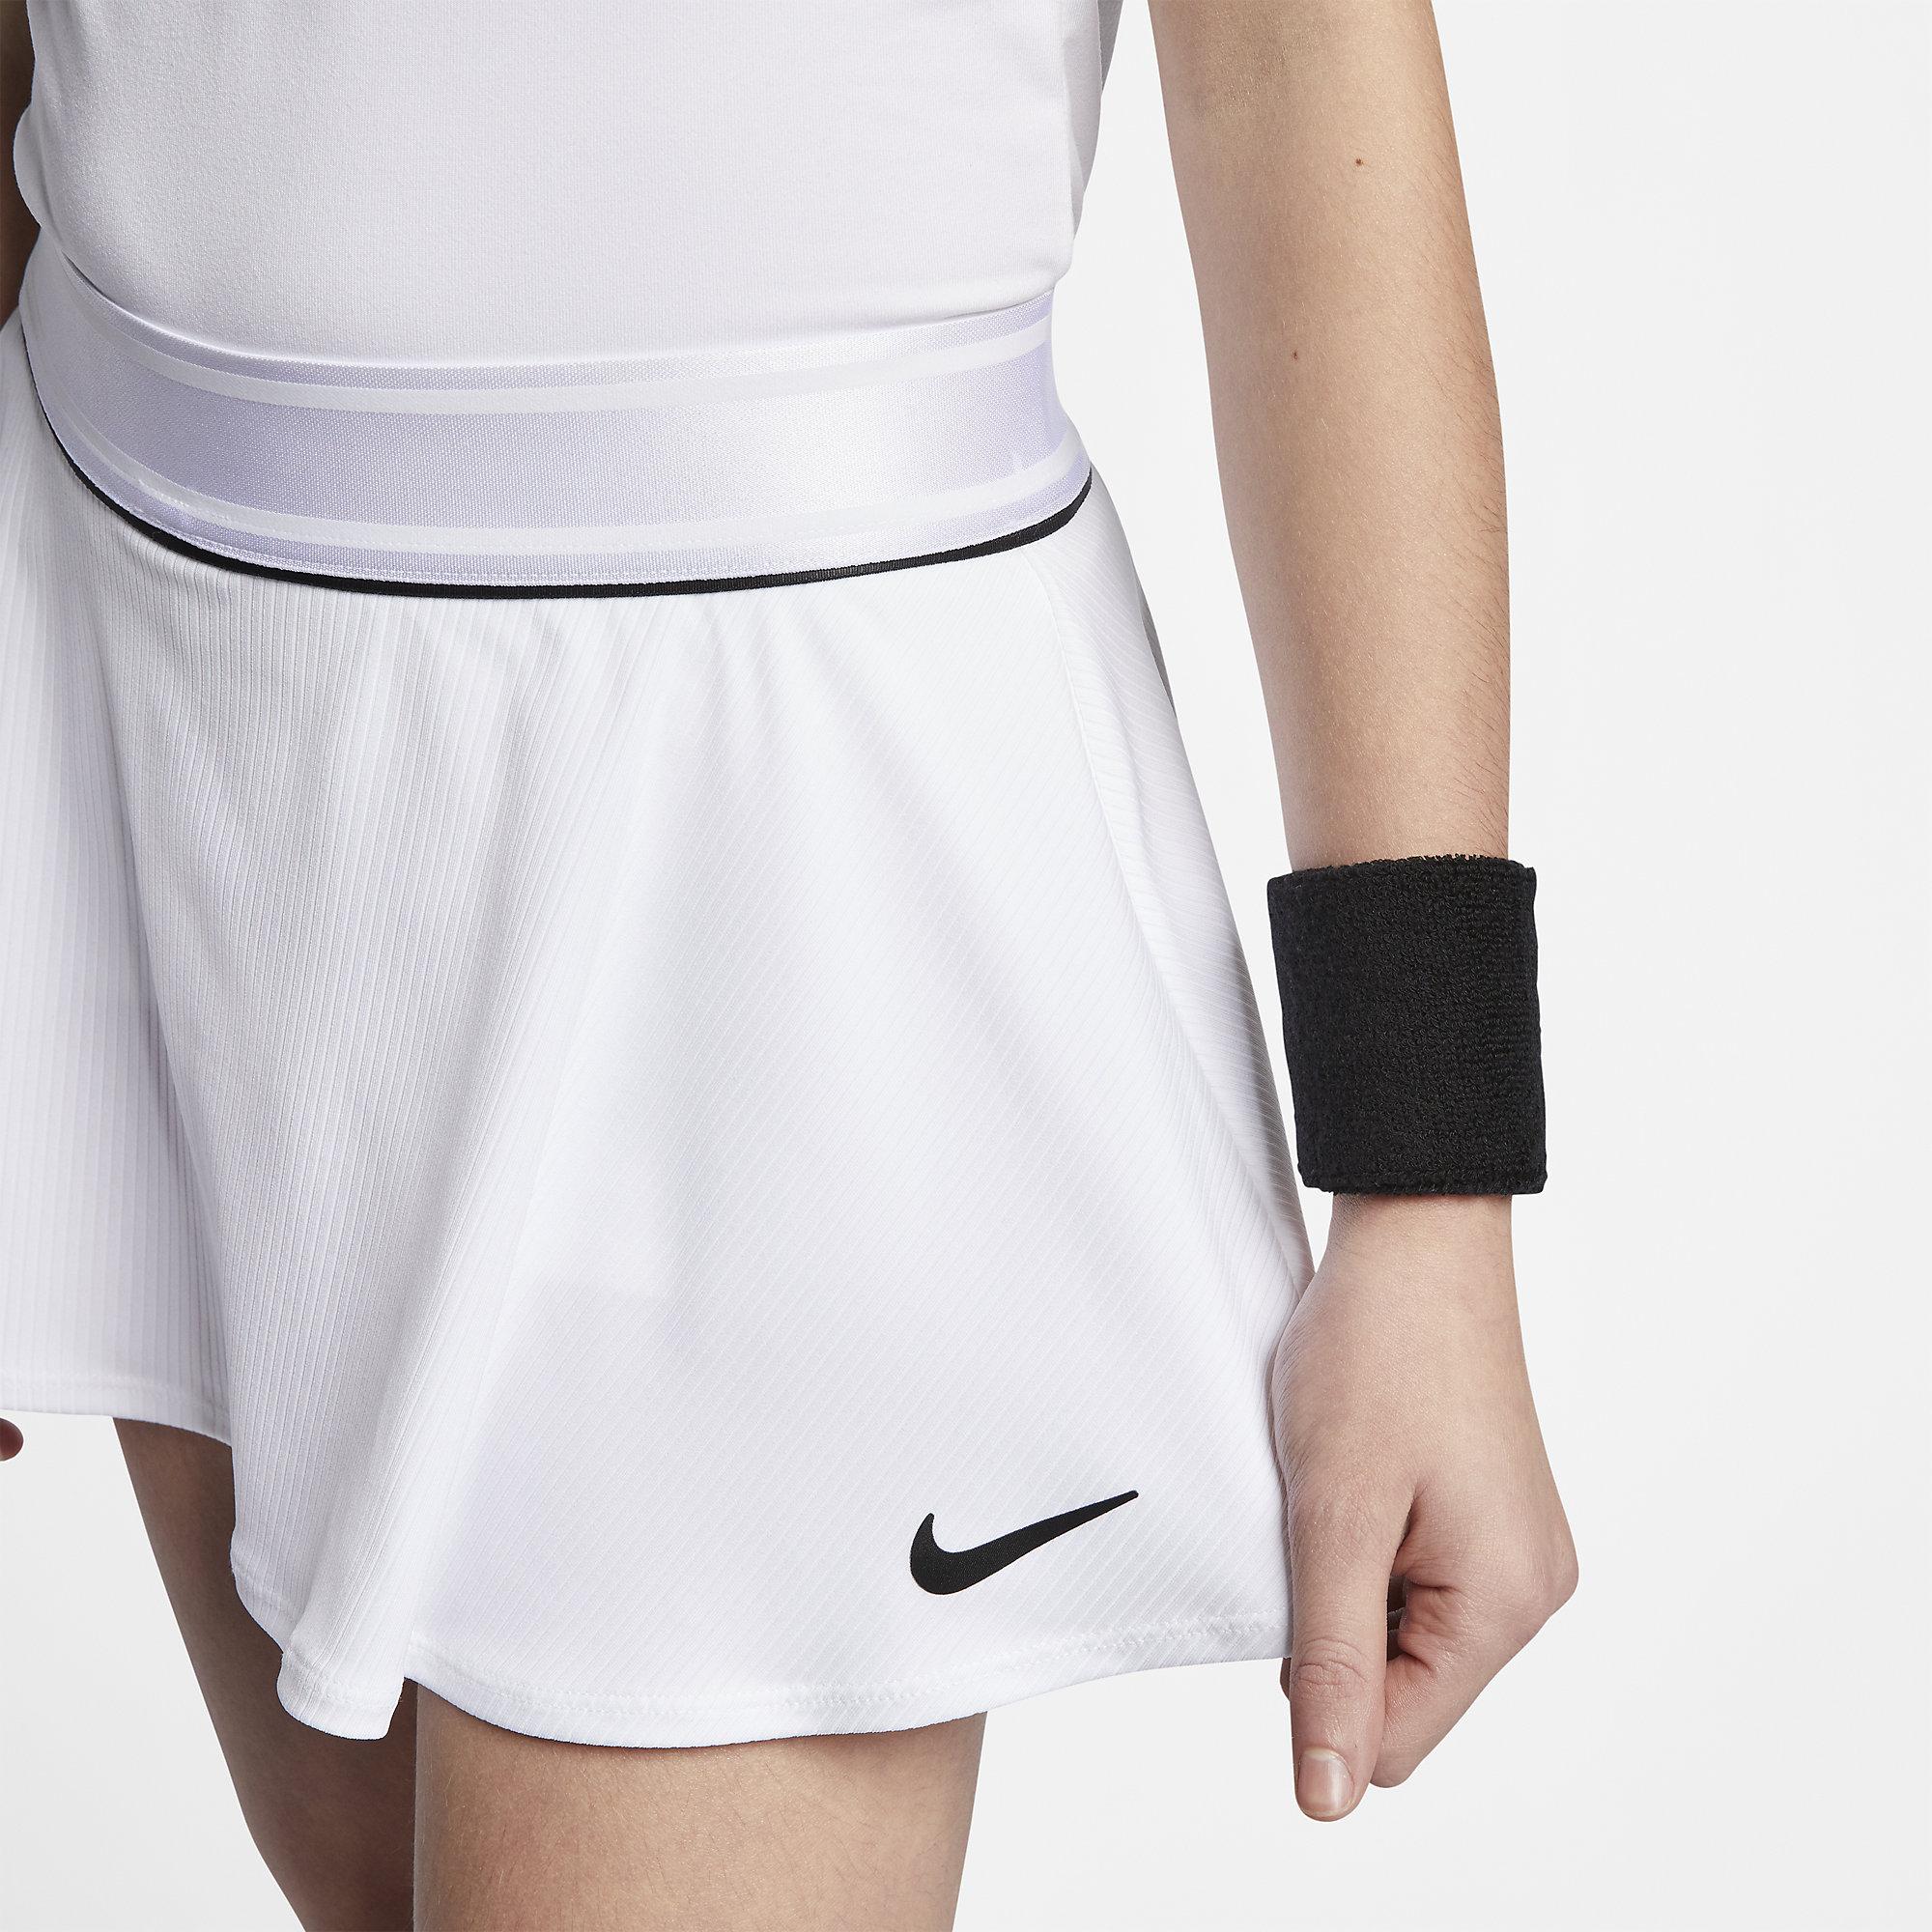 Nike Girls Dri-FIT Tennis Skort - White/Black - Tennisnuts.com